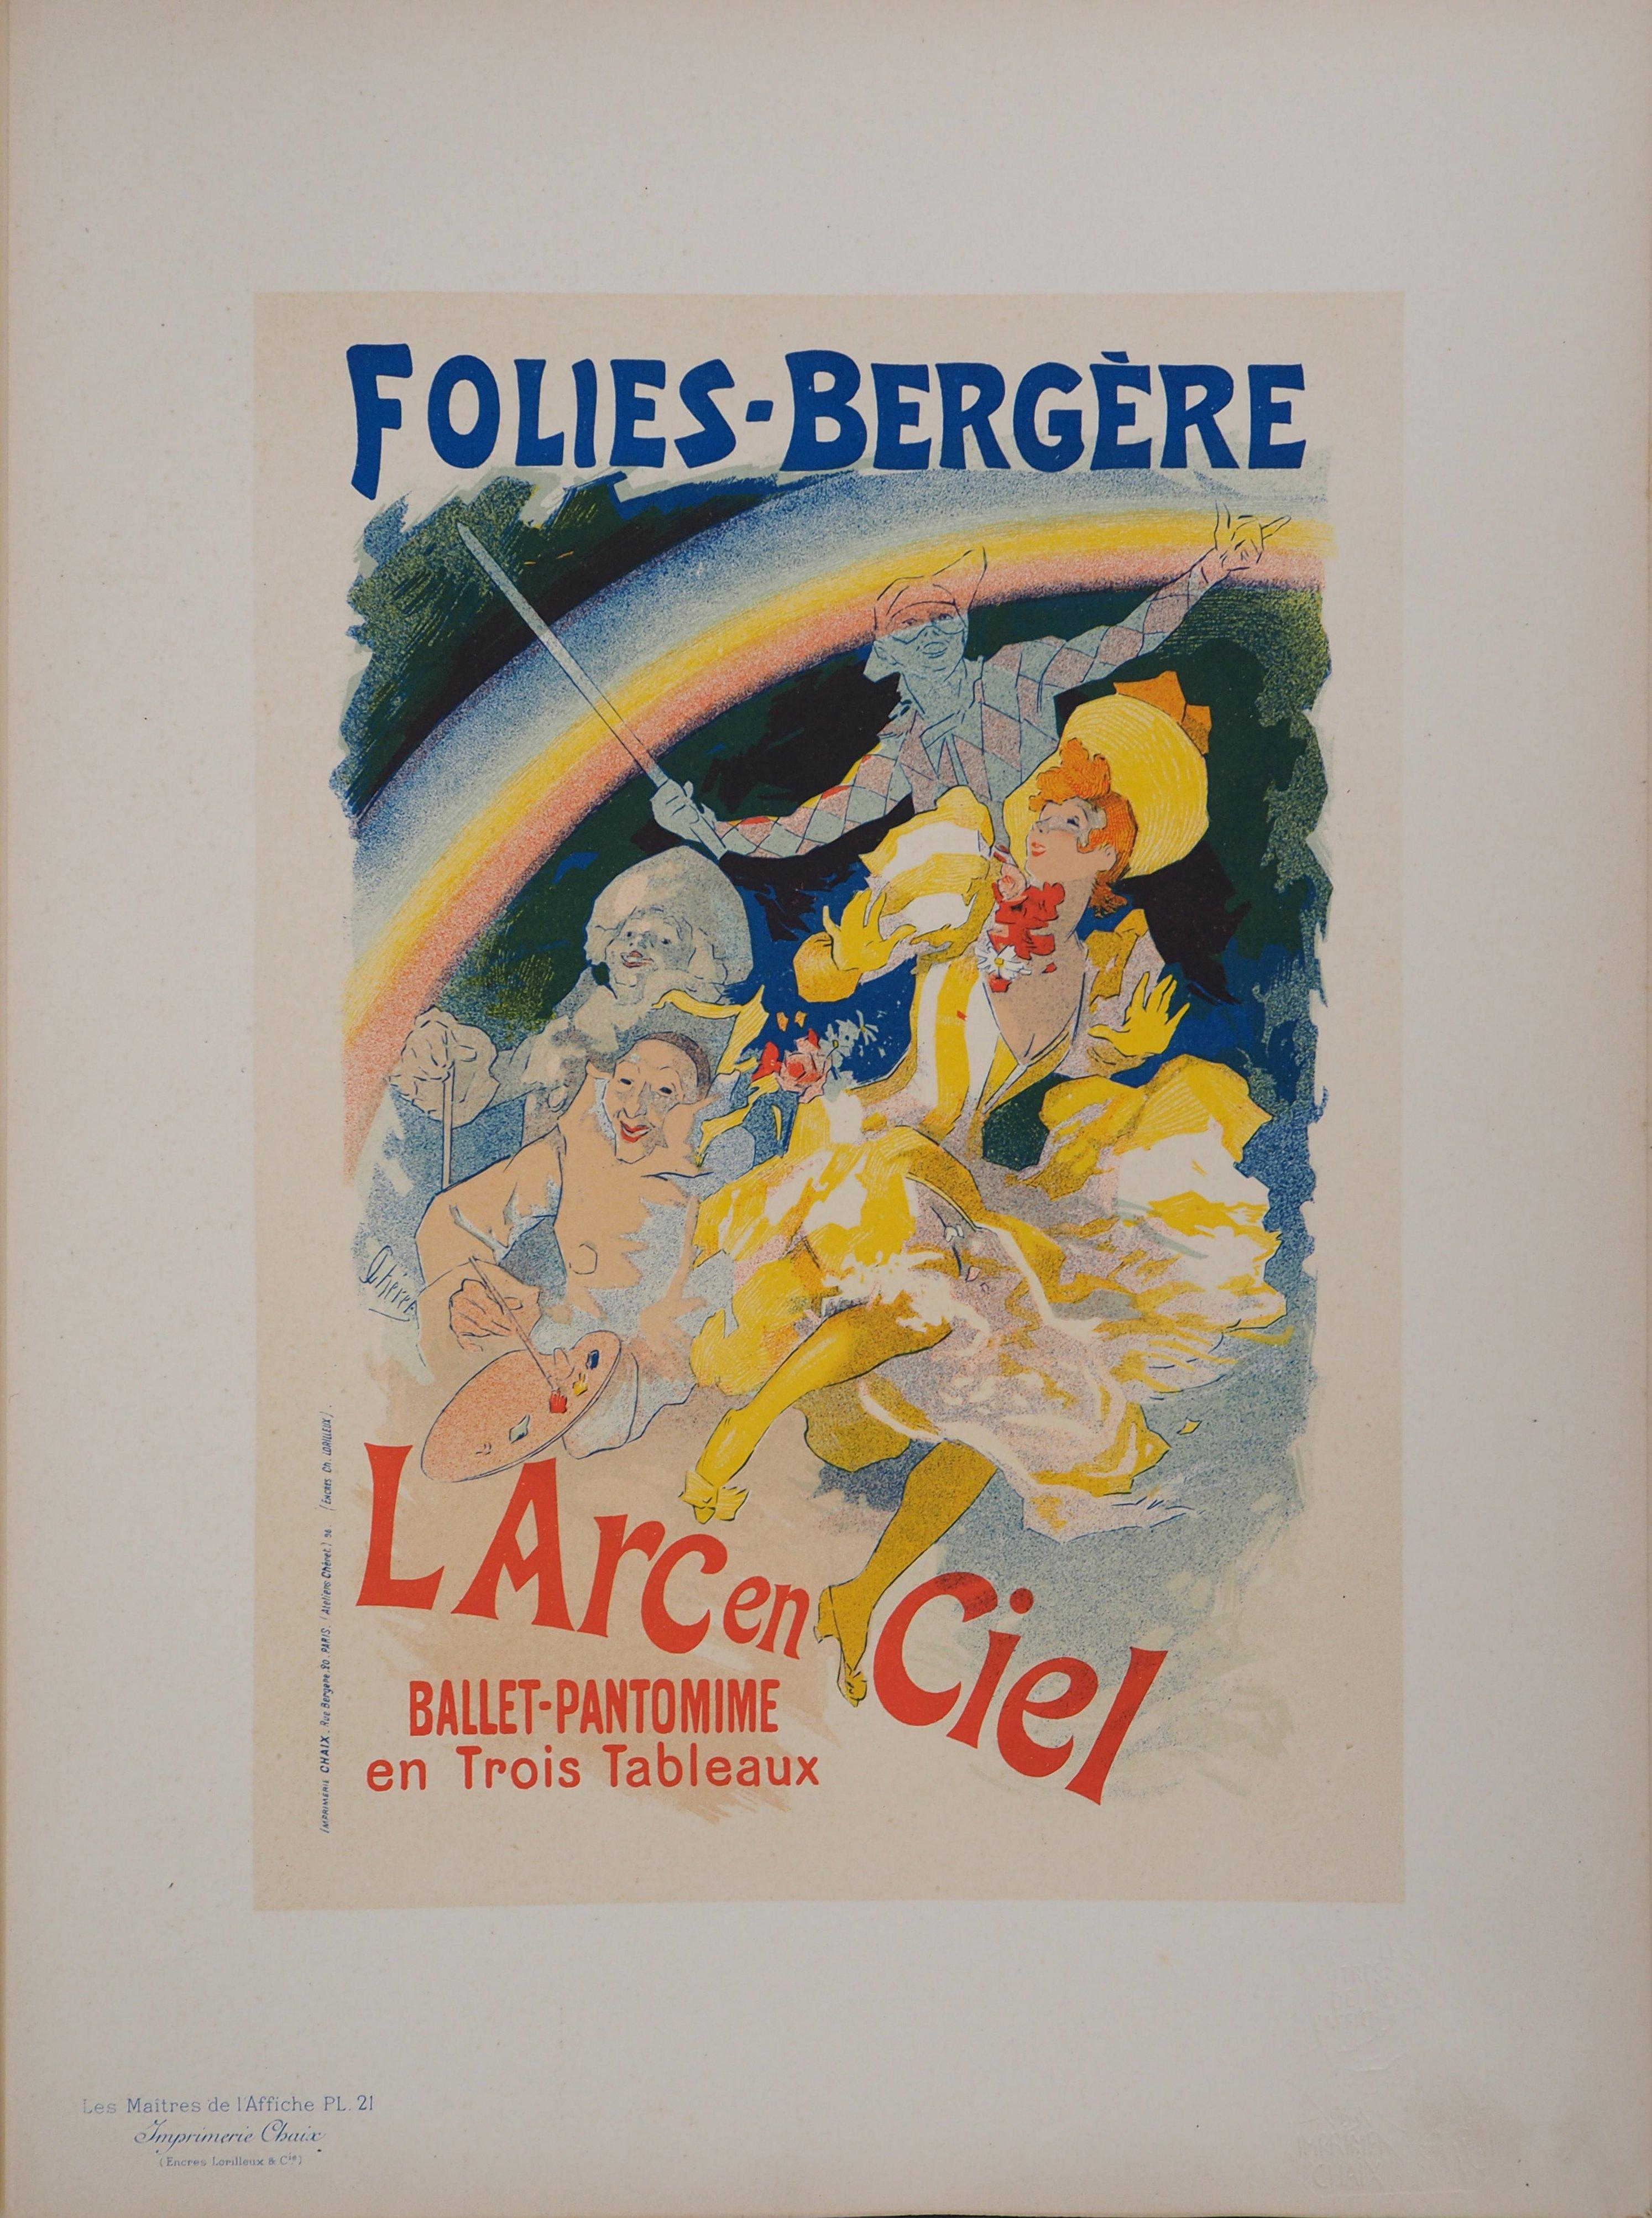 Folies-Bergère - Lithograph (Les Maîtres de l'Affiche), 1895 - Print by Jules Chéret